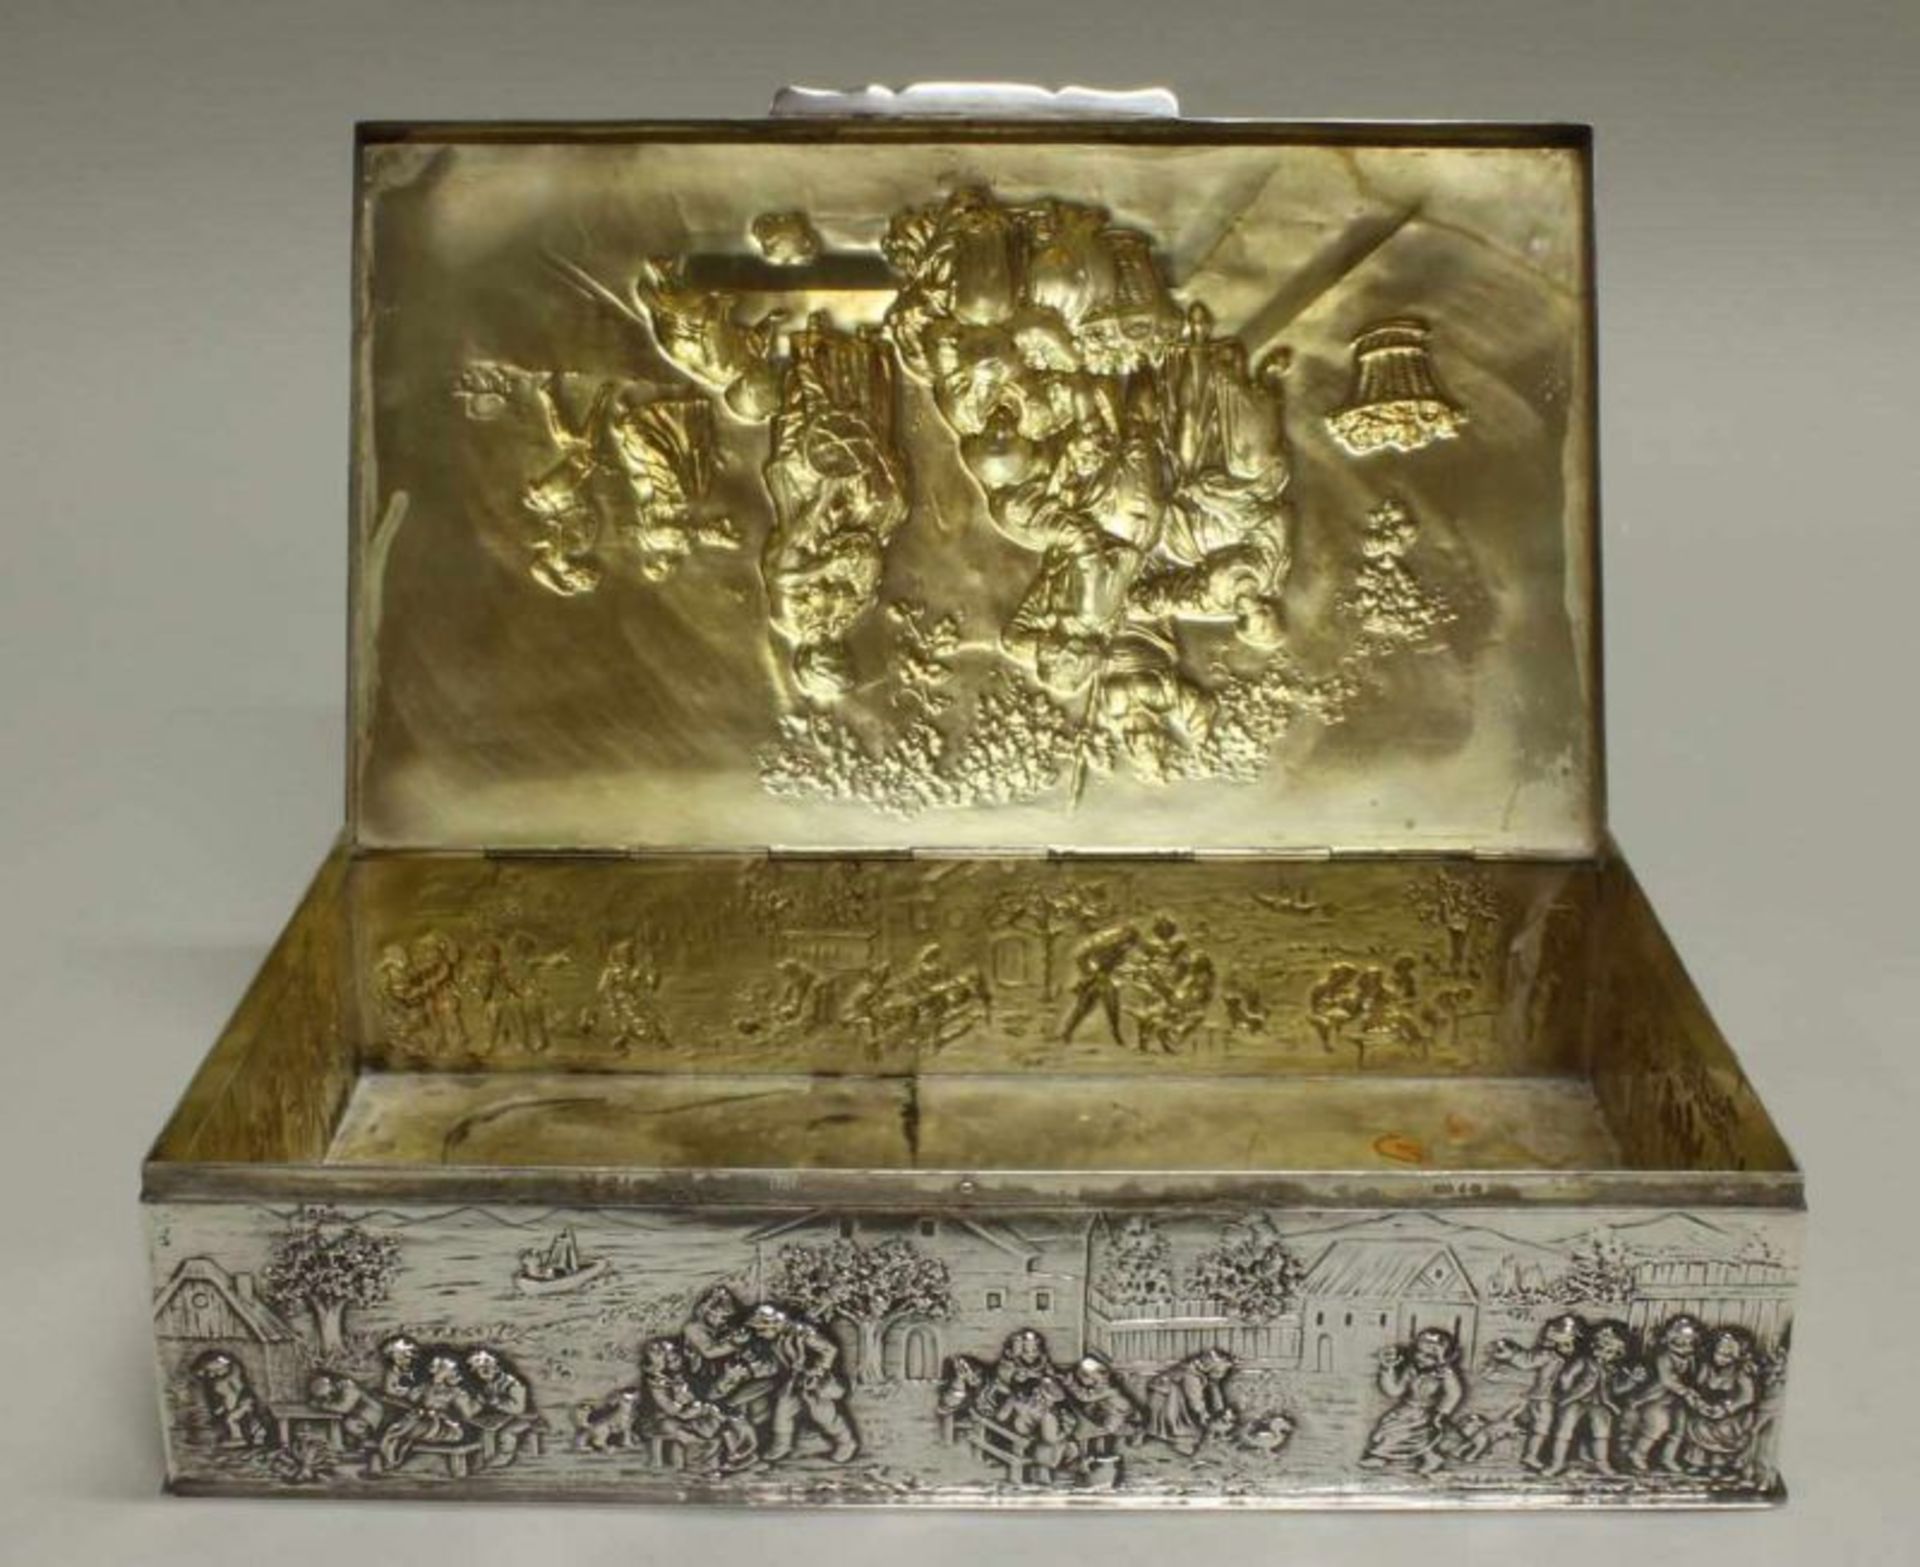 Gebäckdose, Silber 800, deutsch, figuraler Reliefdekor, innen vergoldet, 6 x 26 x 15 cm, ca. 1.375 g - Image 7 of 7